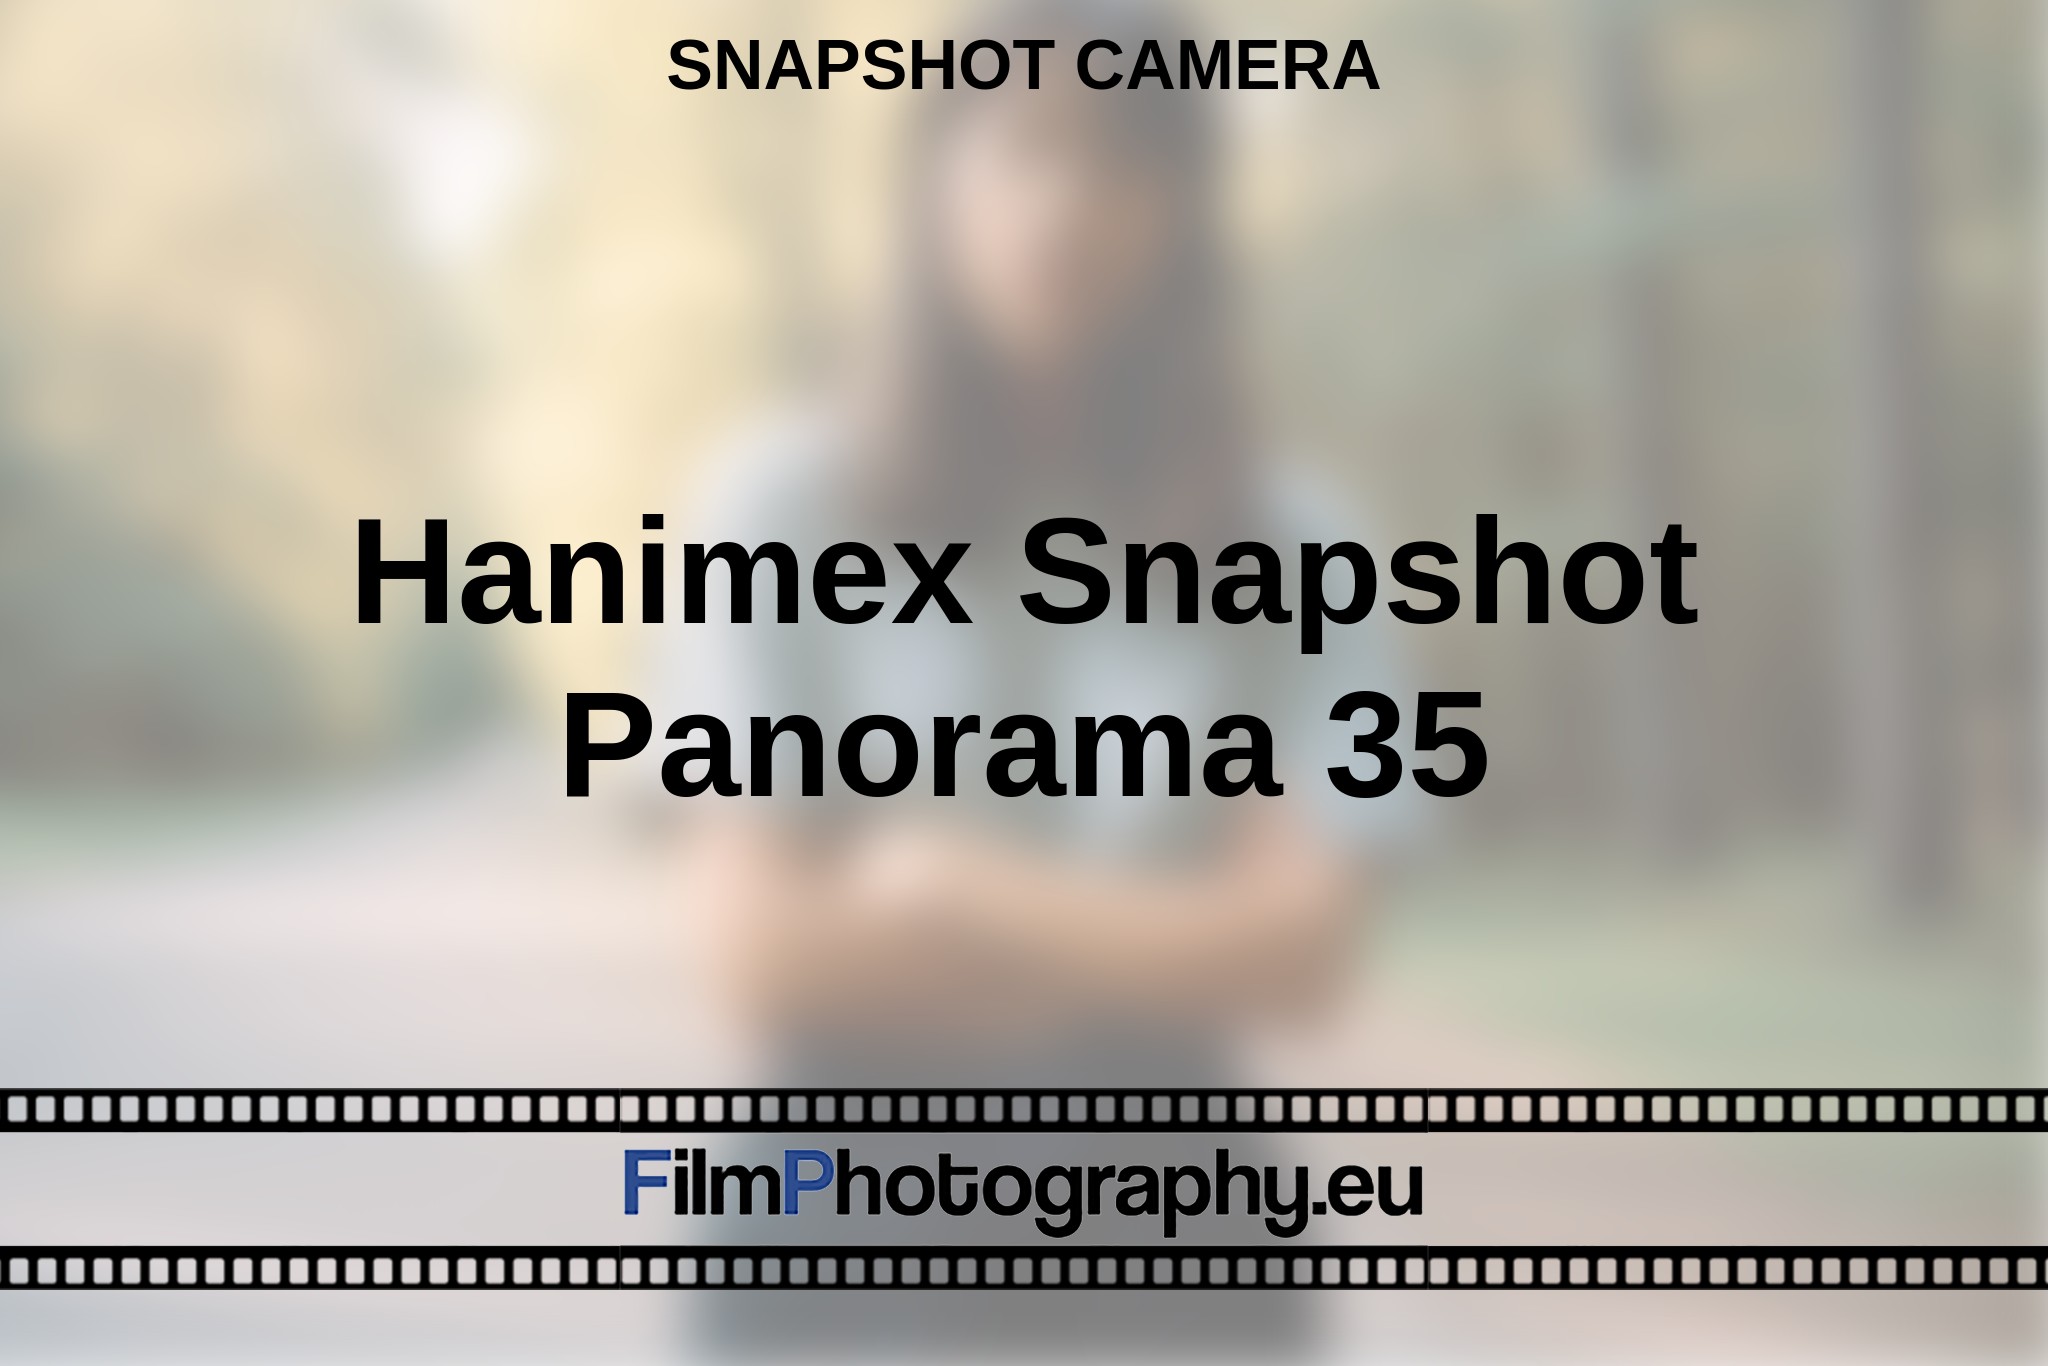 hanimex-snapshot-panorama-35-snapshot-camera-bnv.jpg